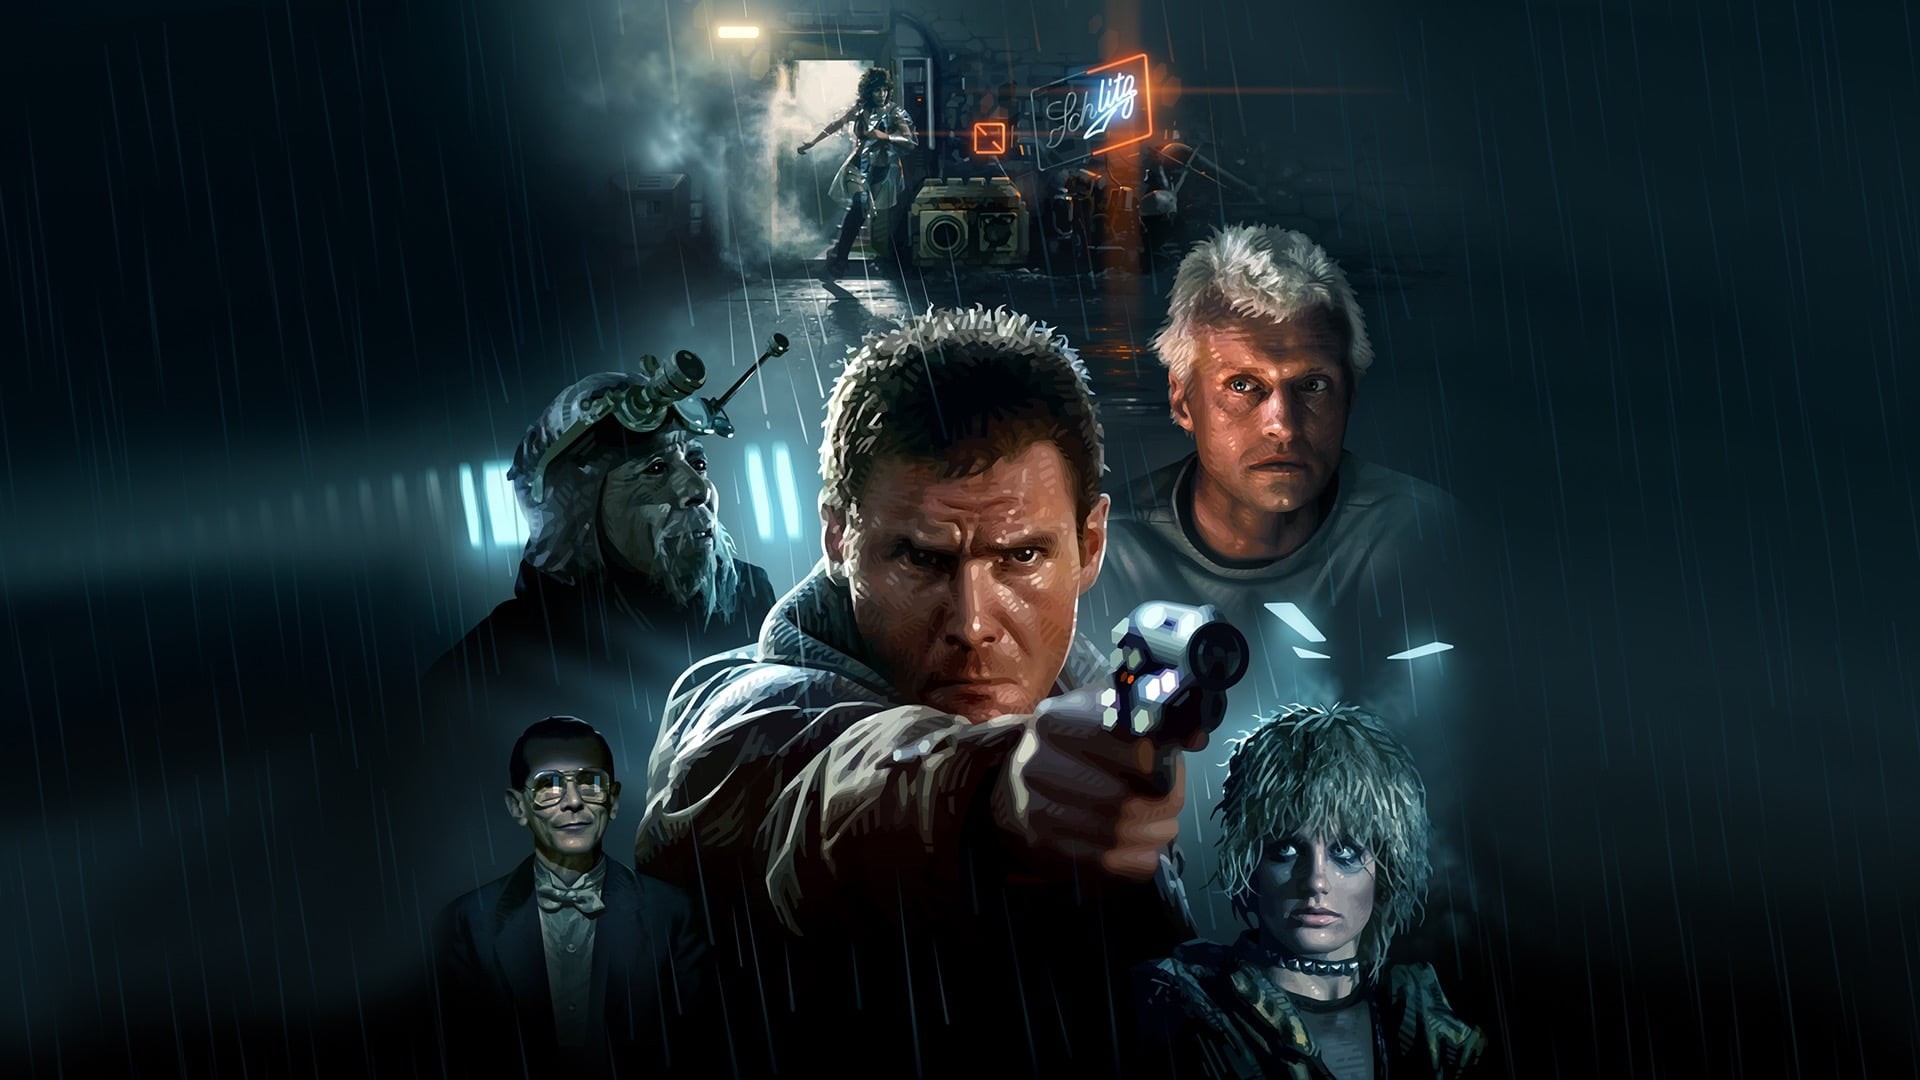 Une série Blade Runner est en chemin, affirme Ridley Scott lui-même